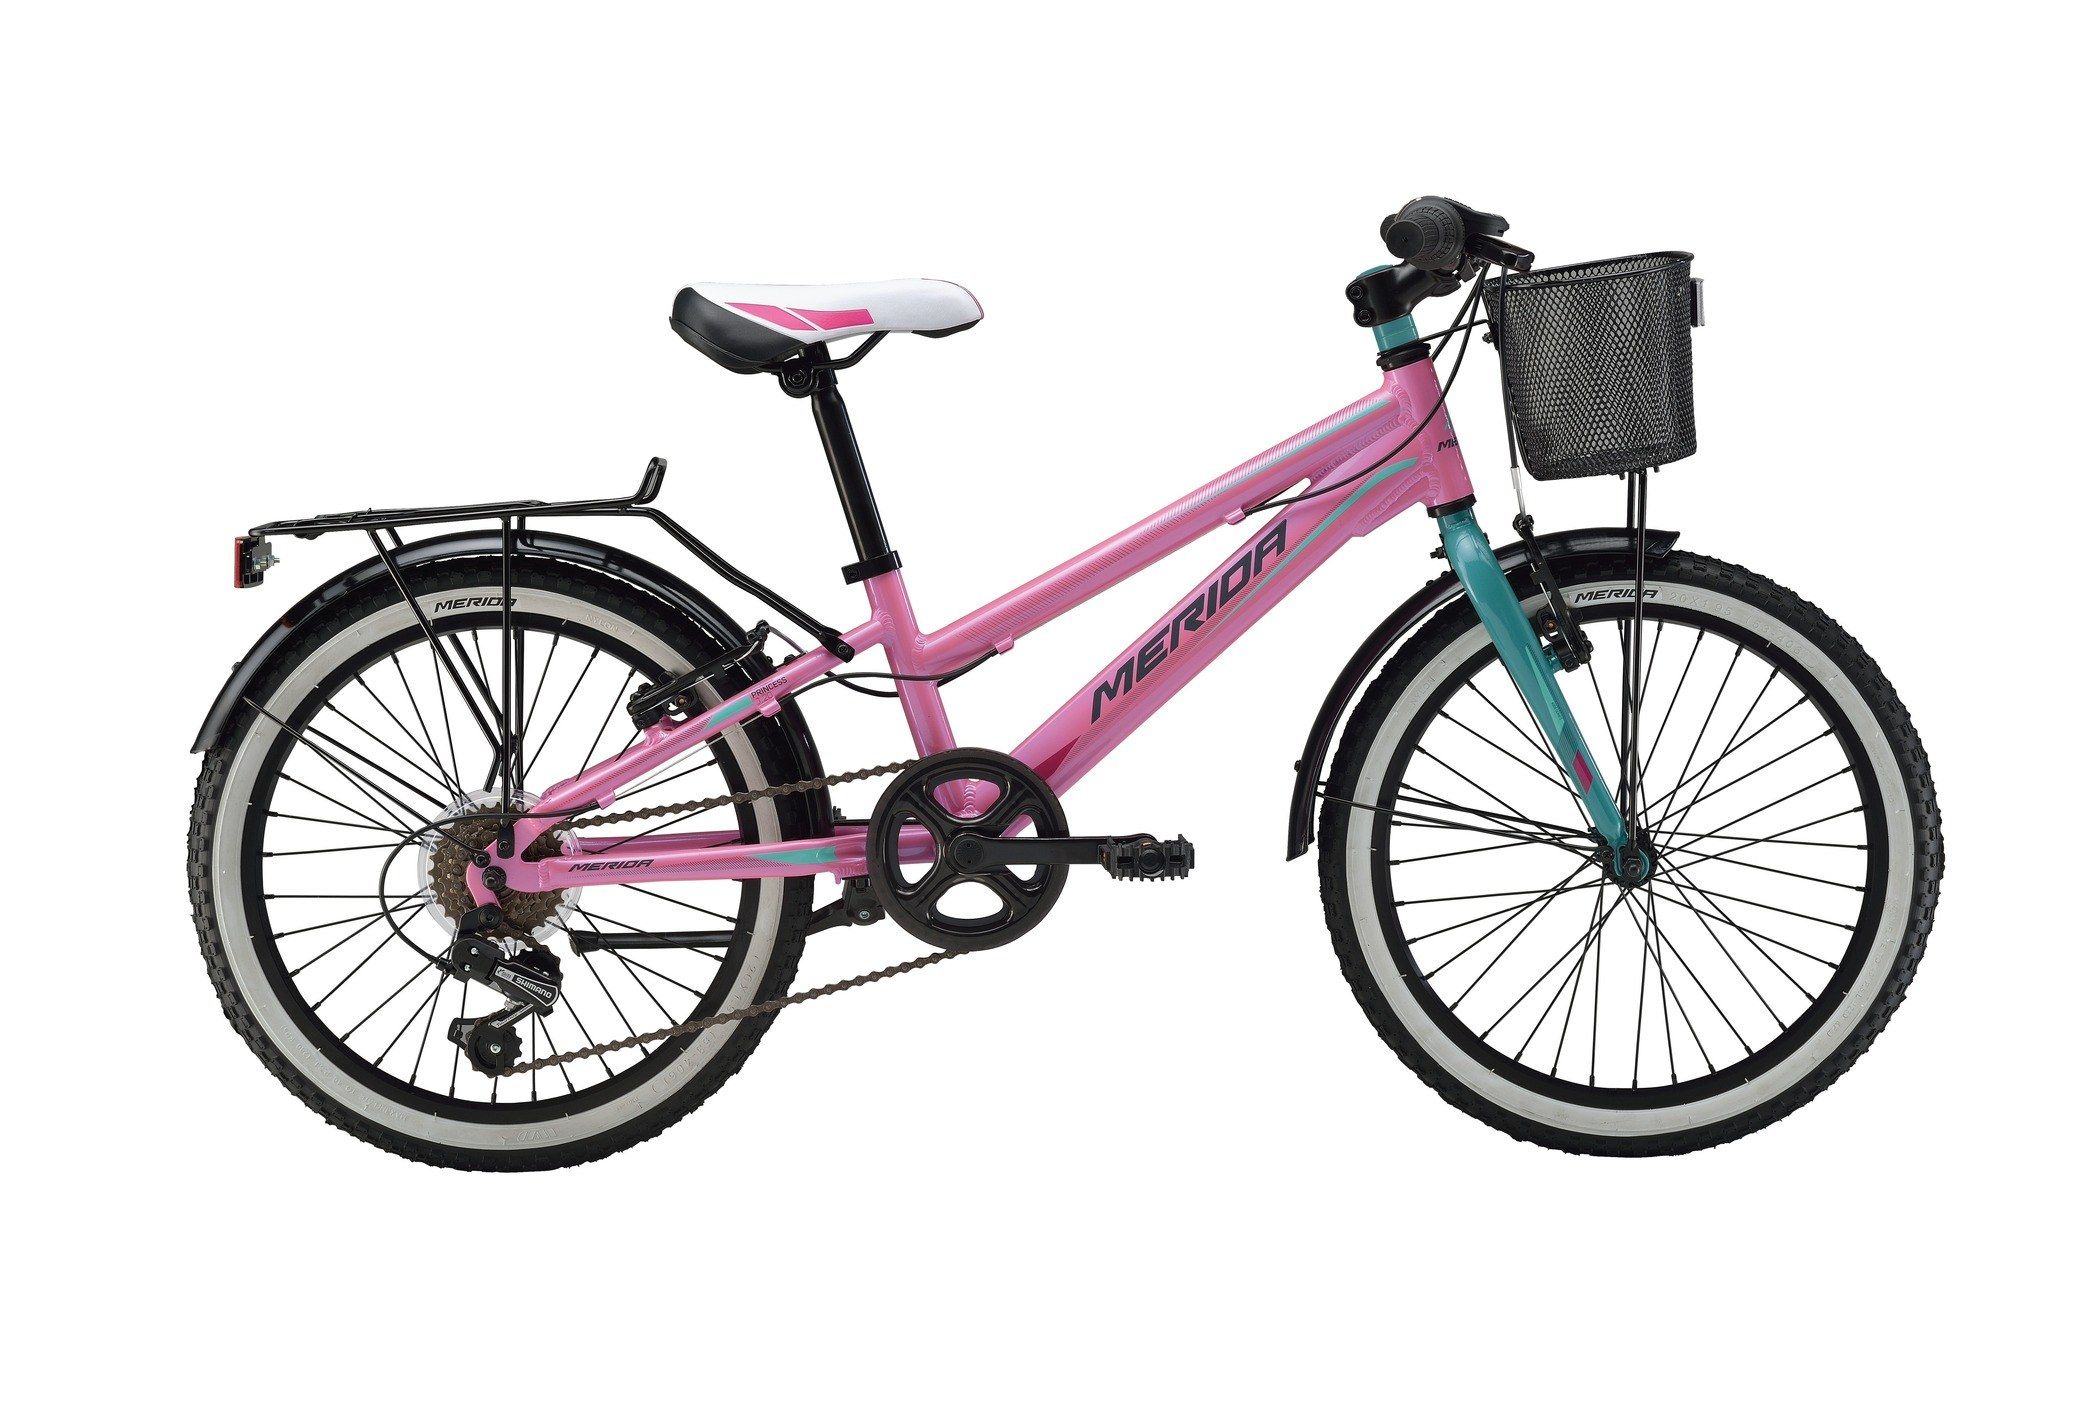  Отзывы о Трехколесный детский велосипед Merida Princess J20 6 spd 2016